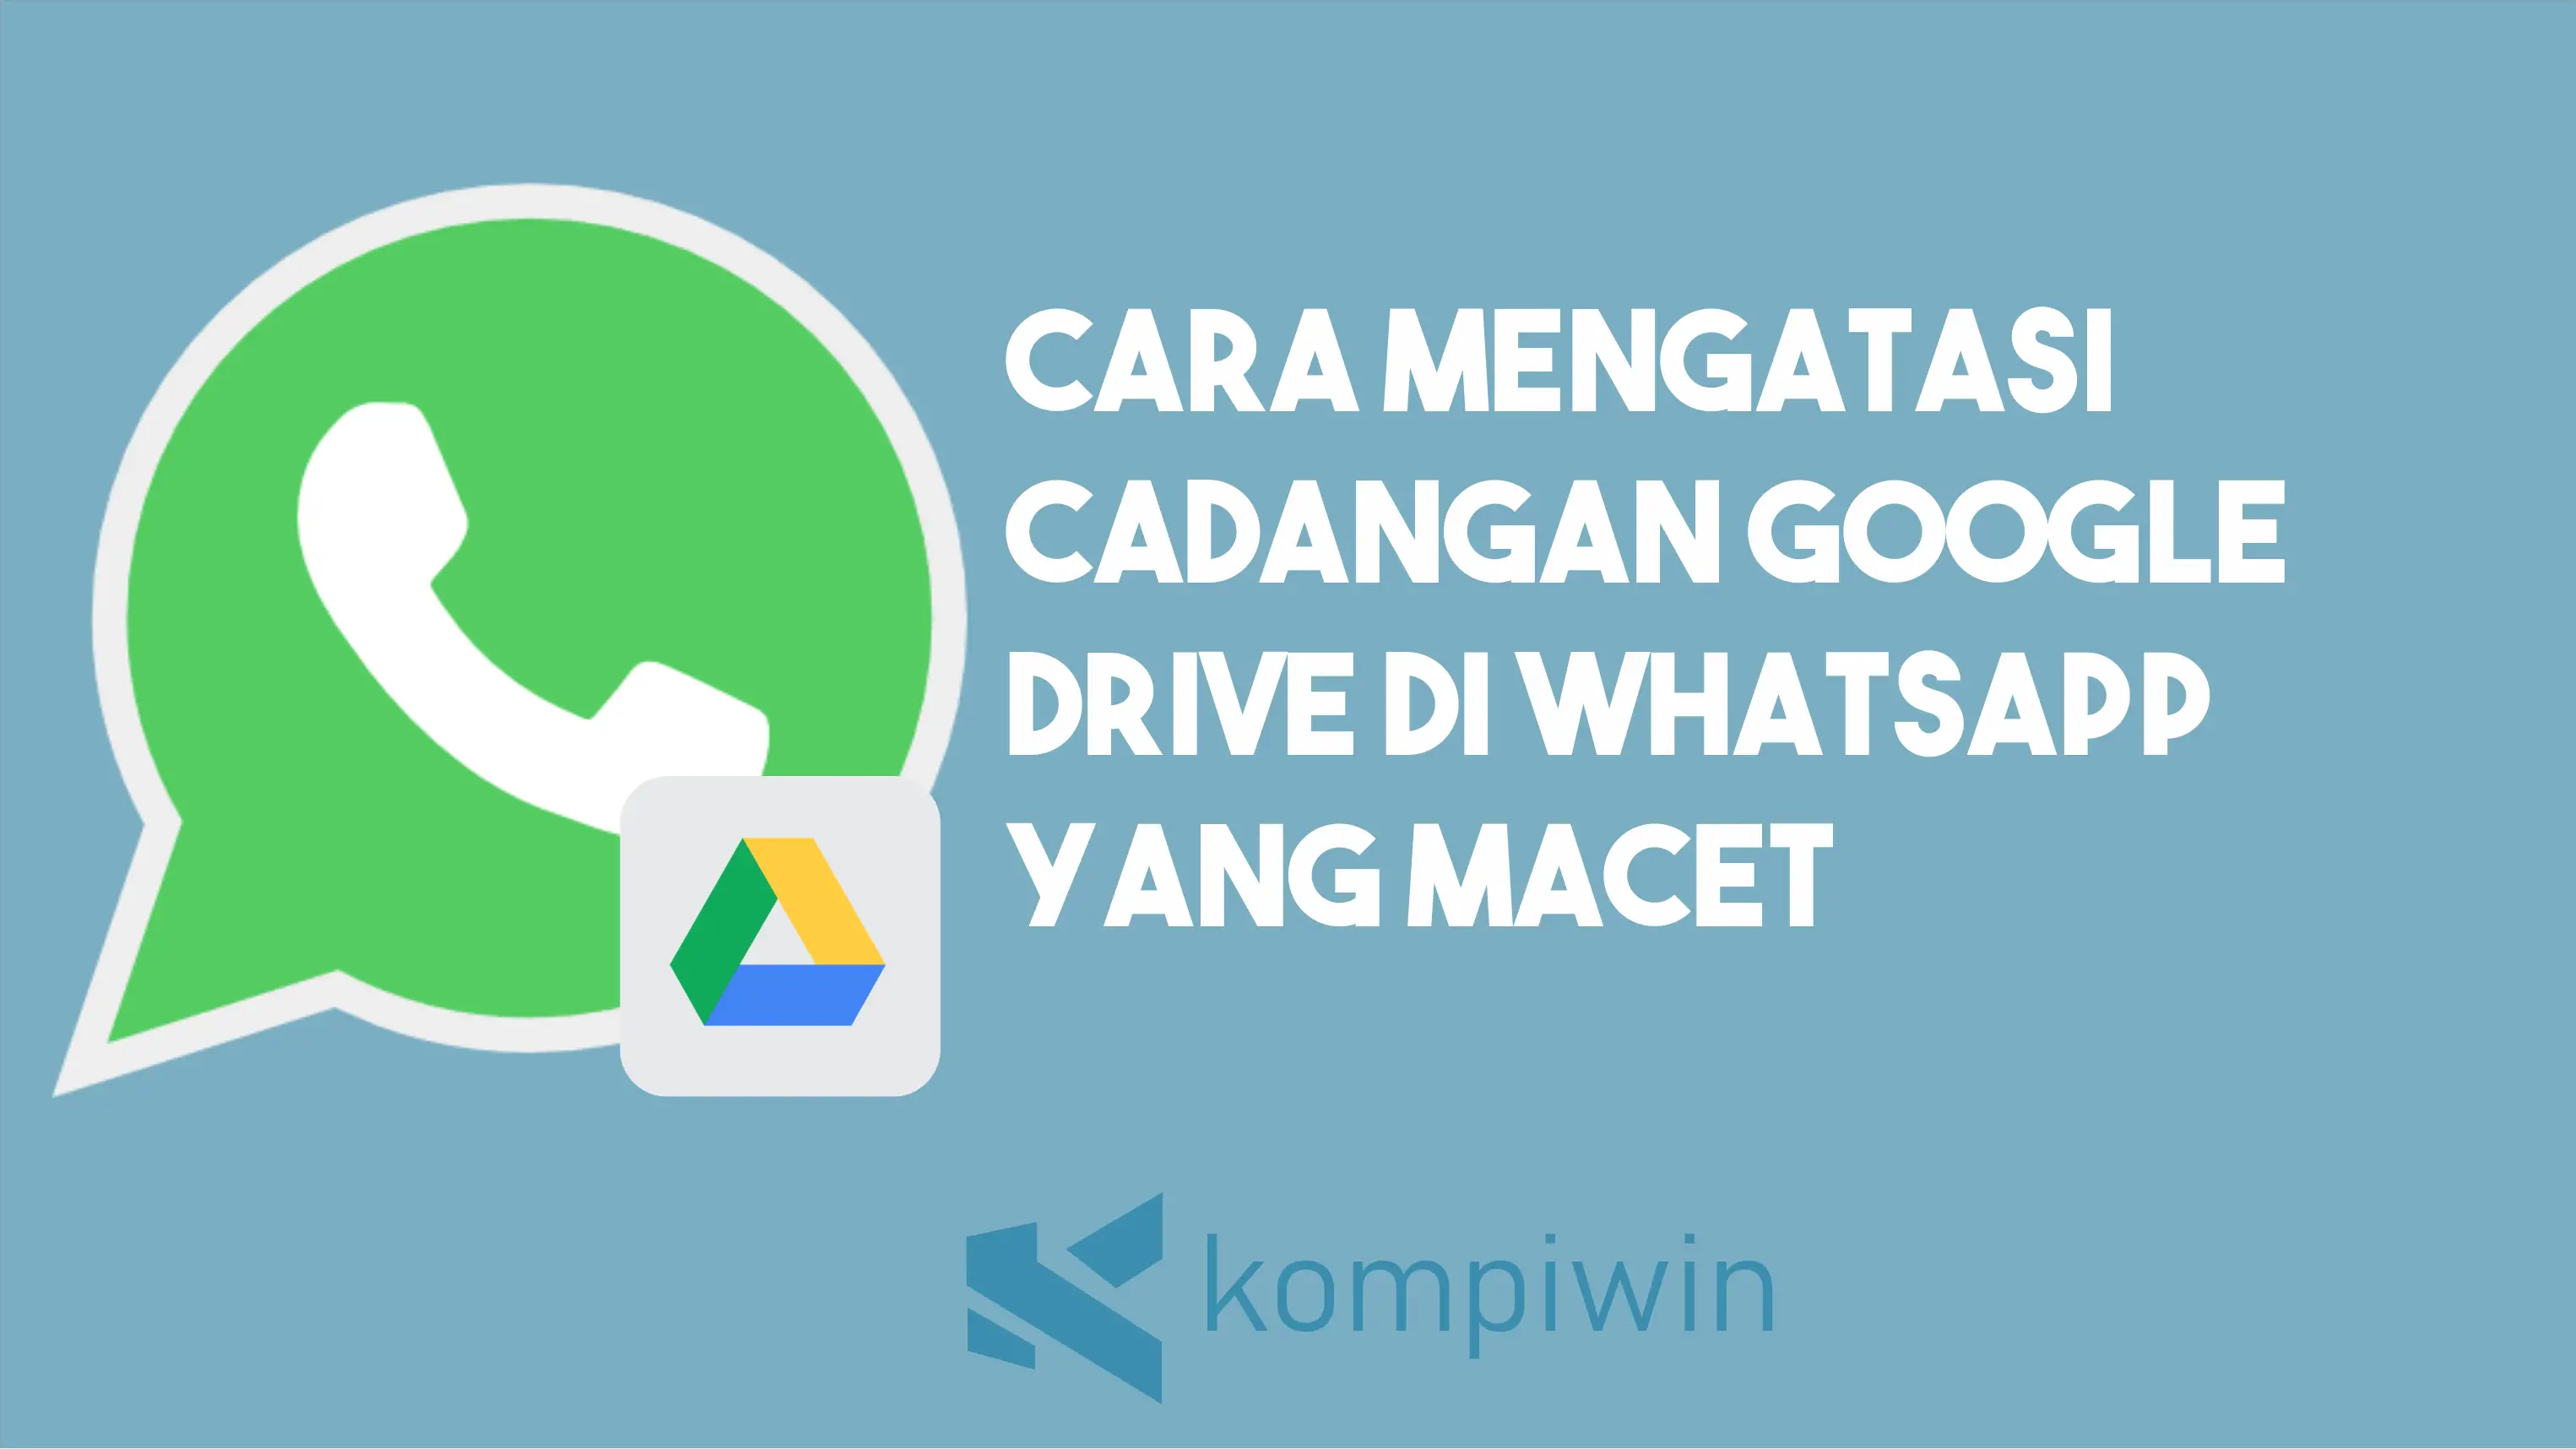 Cara Mengatasi Cadangan Google Drive di WhatsApp yang Macet